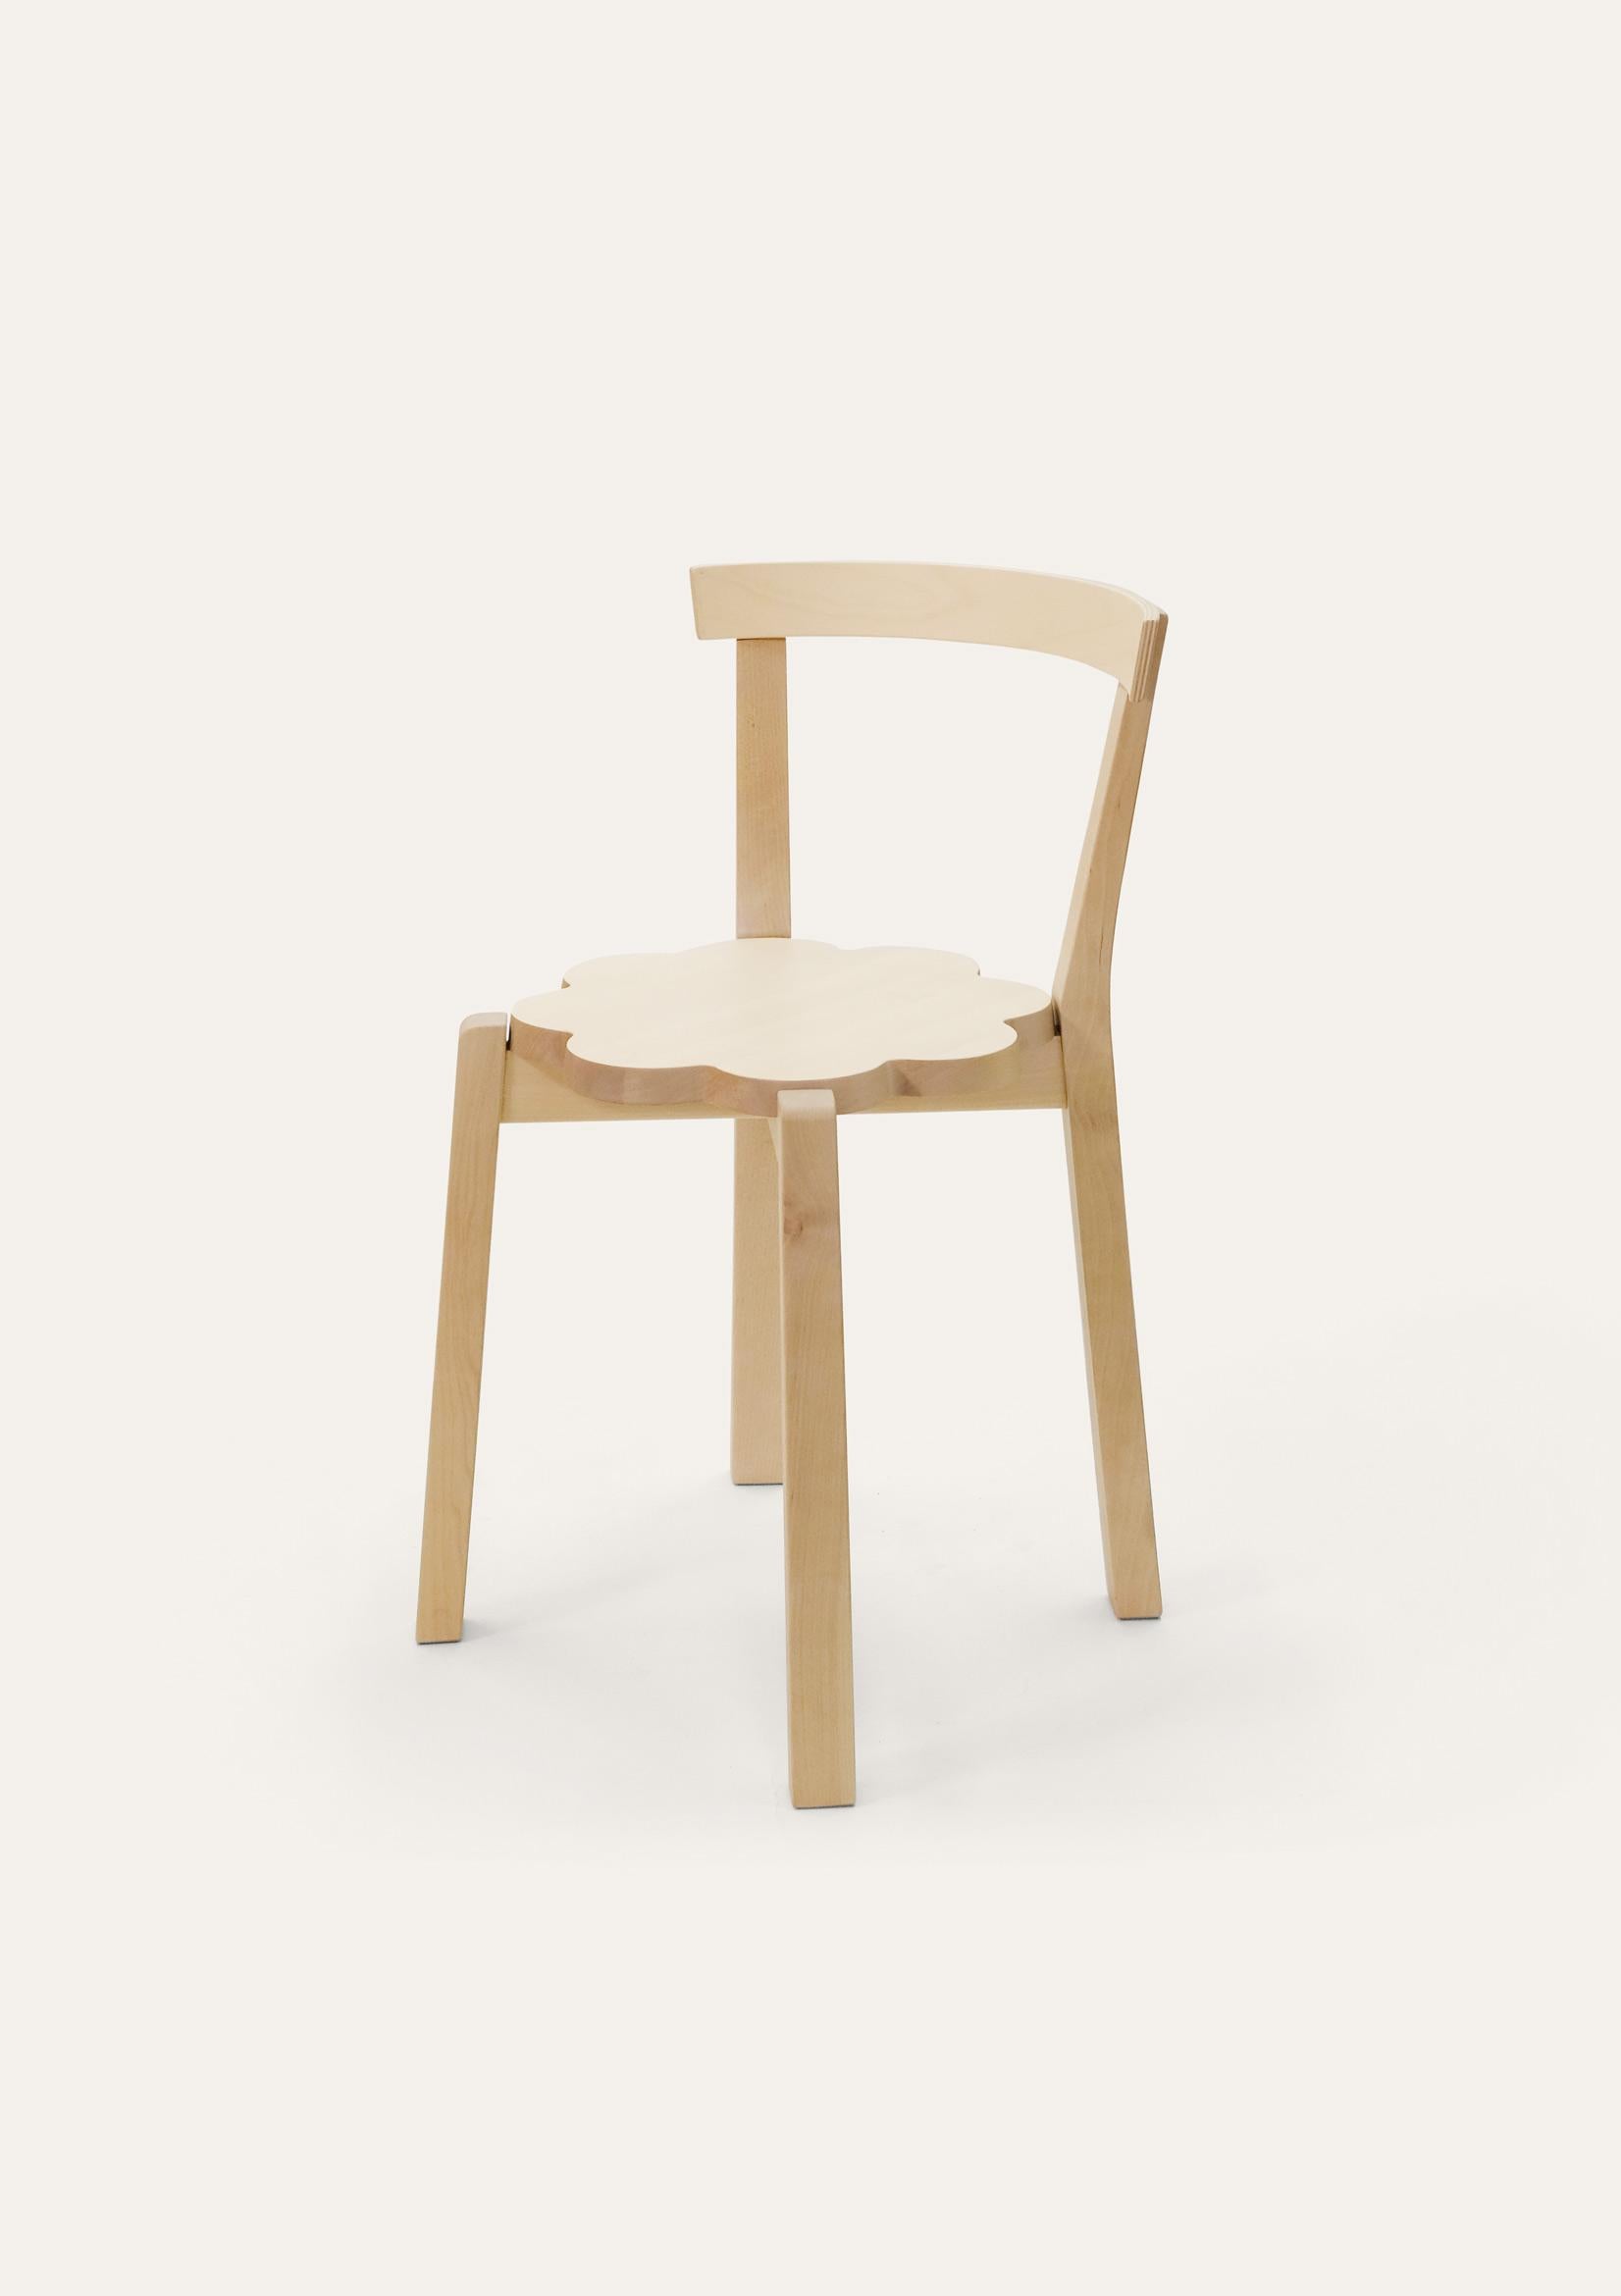 Natural Blossom Stuhl von Storängen Design
Abmessungen: T 46 x B 41 x H 72 x SH 45cm
MATERIAL: Birkenholz.
Erhältlich in anderen Farben und Größen.

Ein kleiner und ordentlicher, stapelbarer Stuhl, der sich gut an Tischen in Cafés und Wohnzimmern